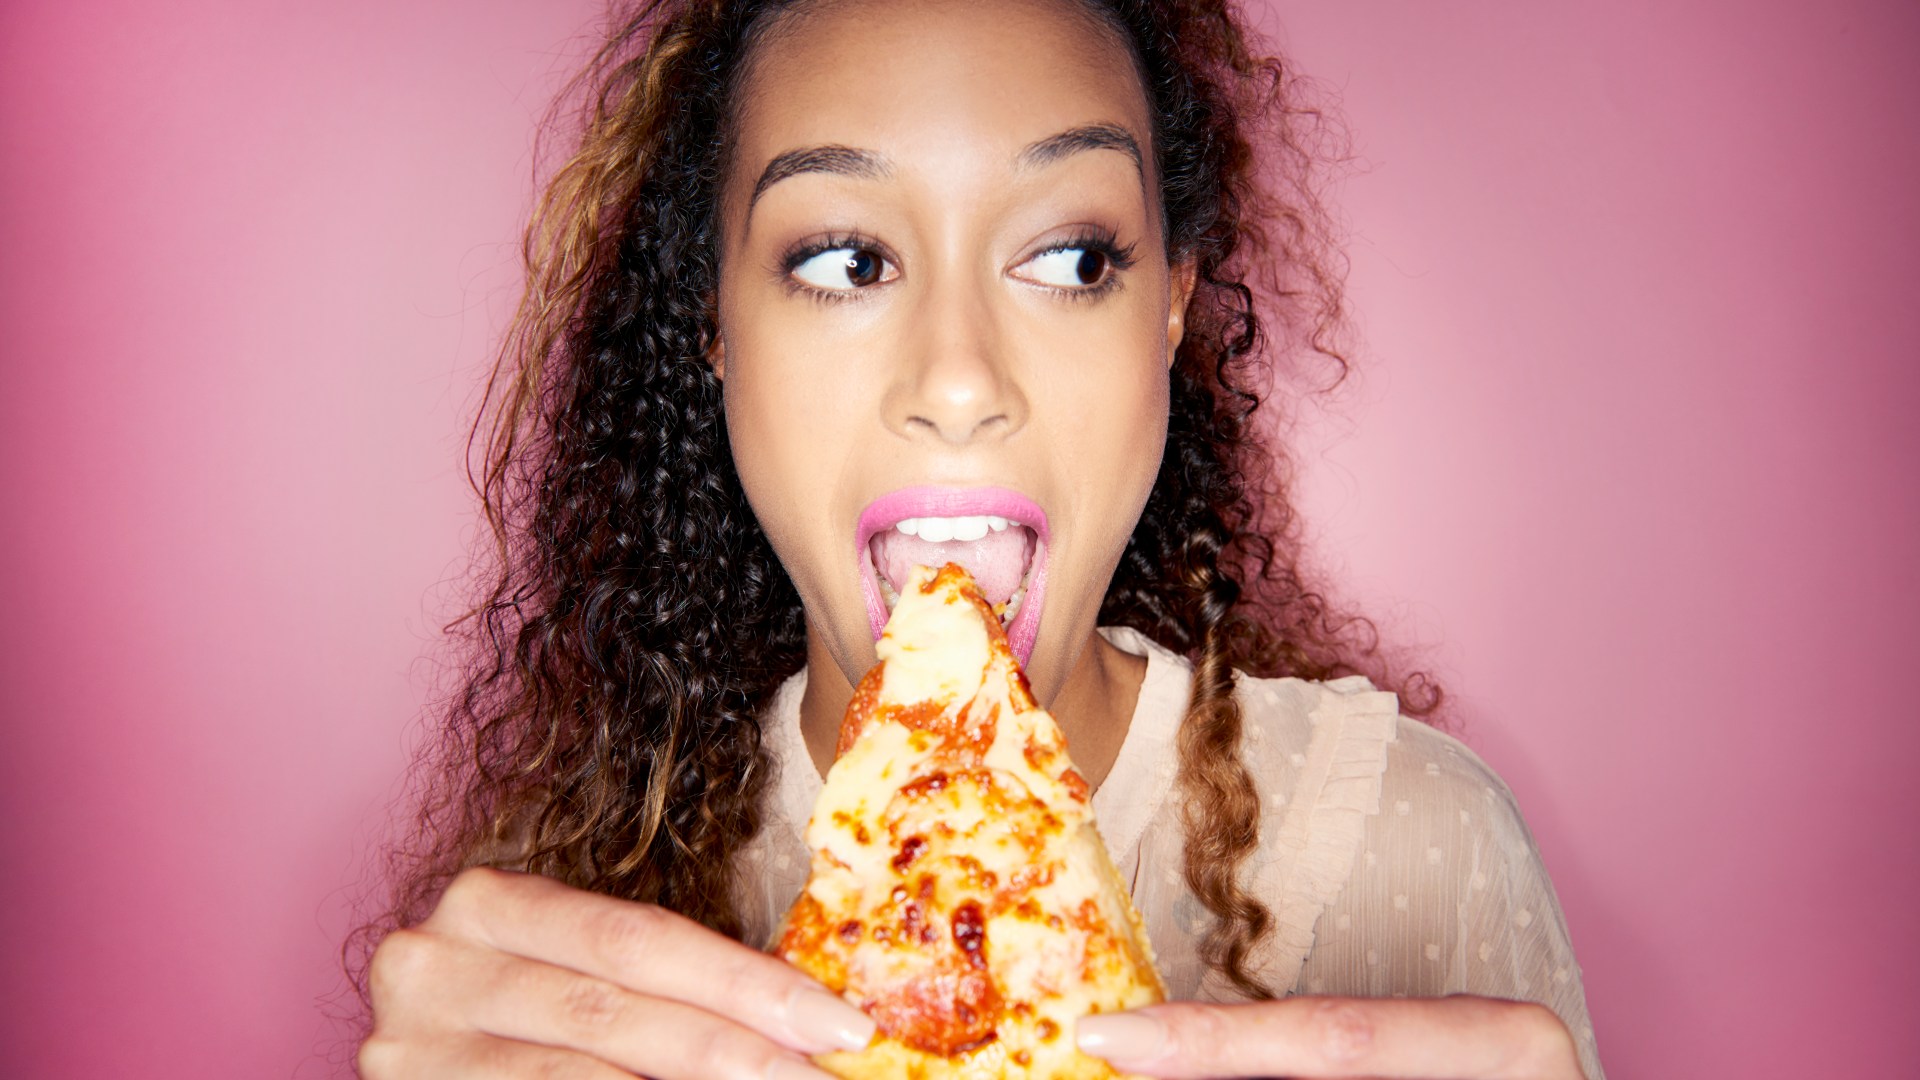 Los expertos en salud revelan los tamaños de porciones recomendados para sus comidas favoritas: aquí le indicamos cuántas porciones de pizza debe comer